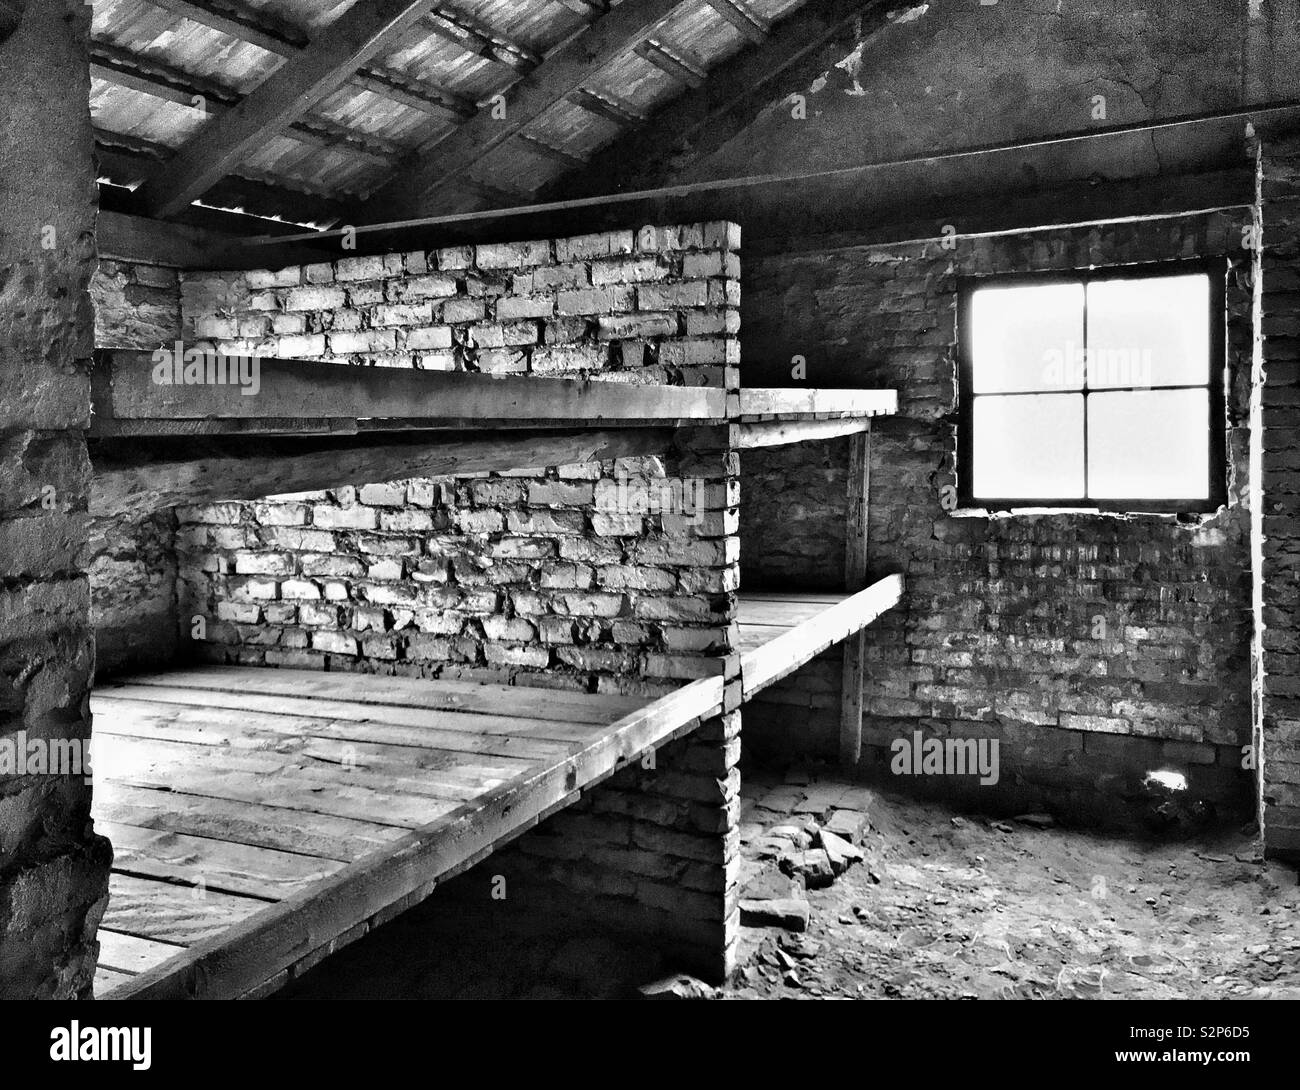 L'interno di una delle capanne sopravvissuti al nazista di Auschwitz II - Birkenau Campo di concentramento in Polonia. Questa è stata la notte in cui molte persone stipate insieme e alcuni morti di fame. Foto Stock